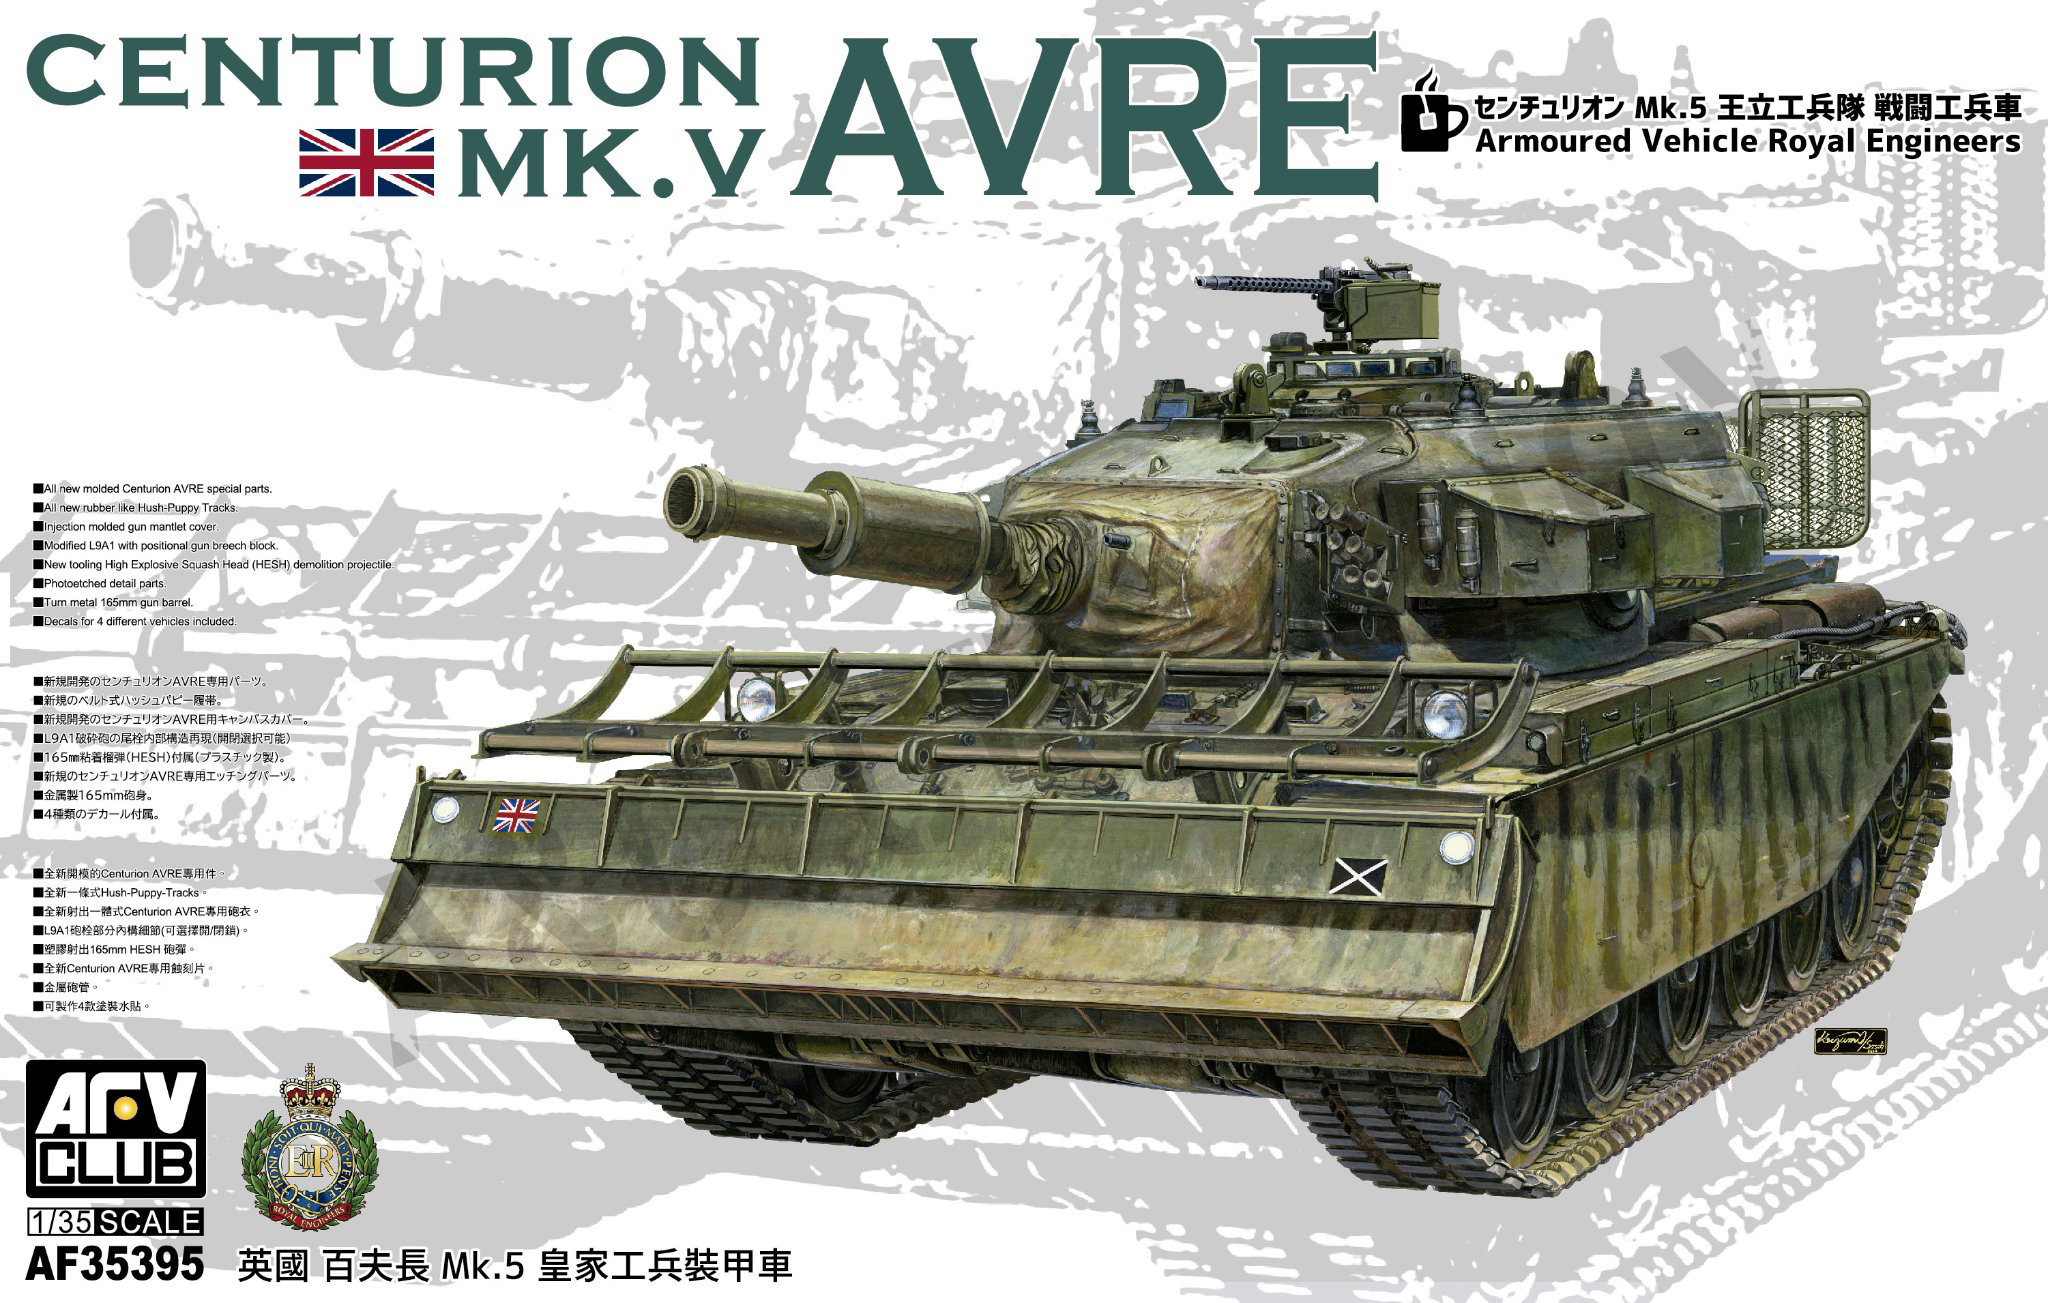 AF35395 Centurion Ml. V AVRE